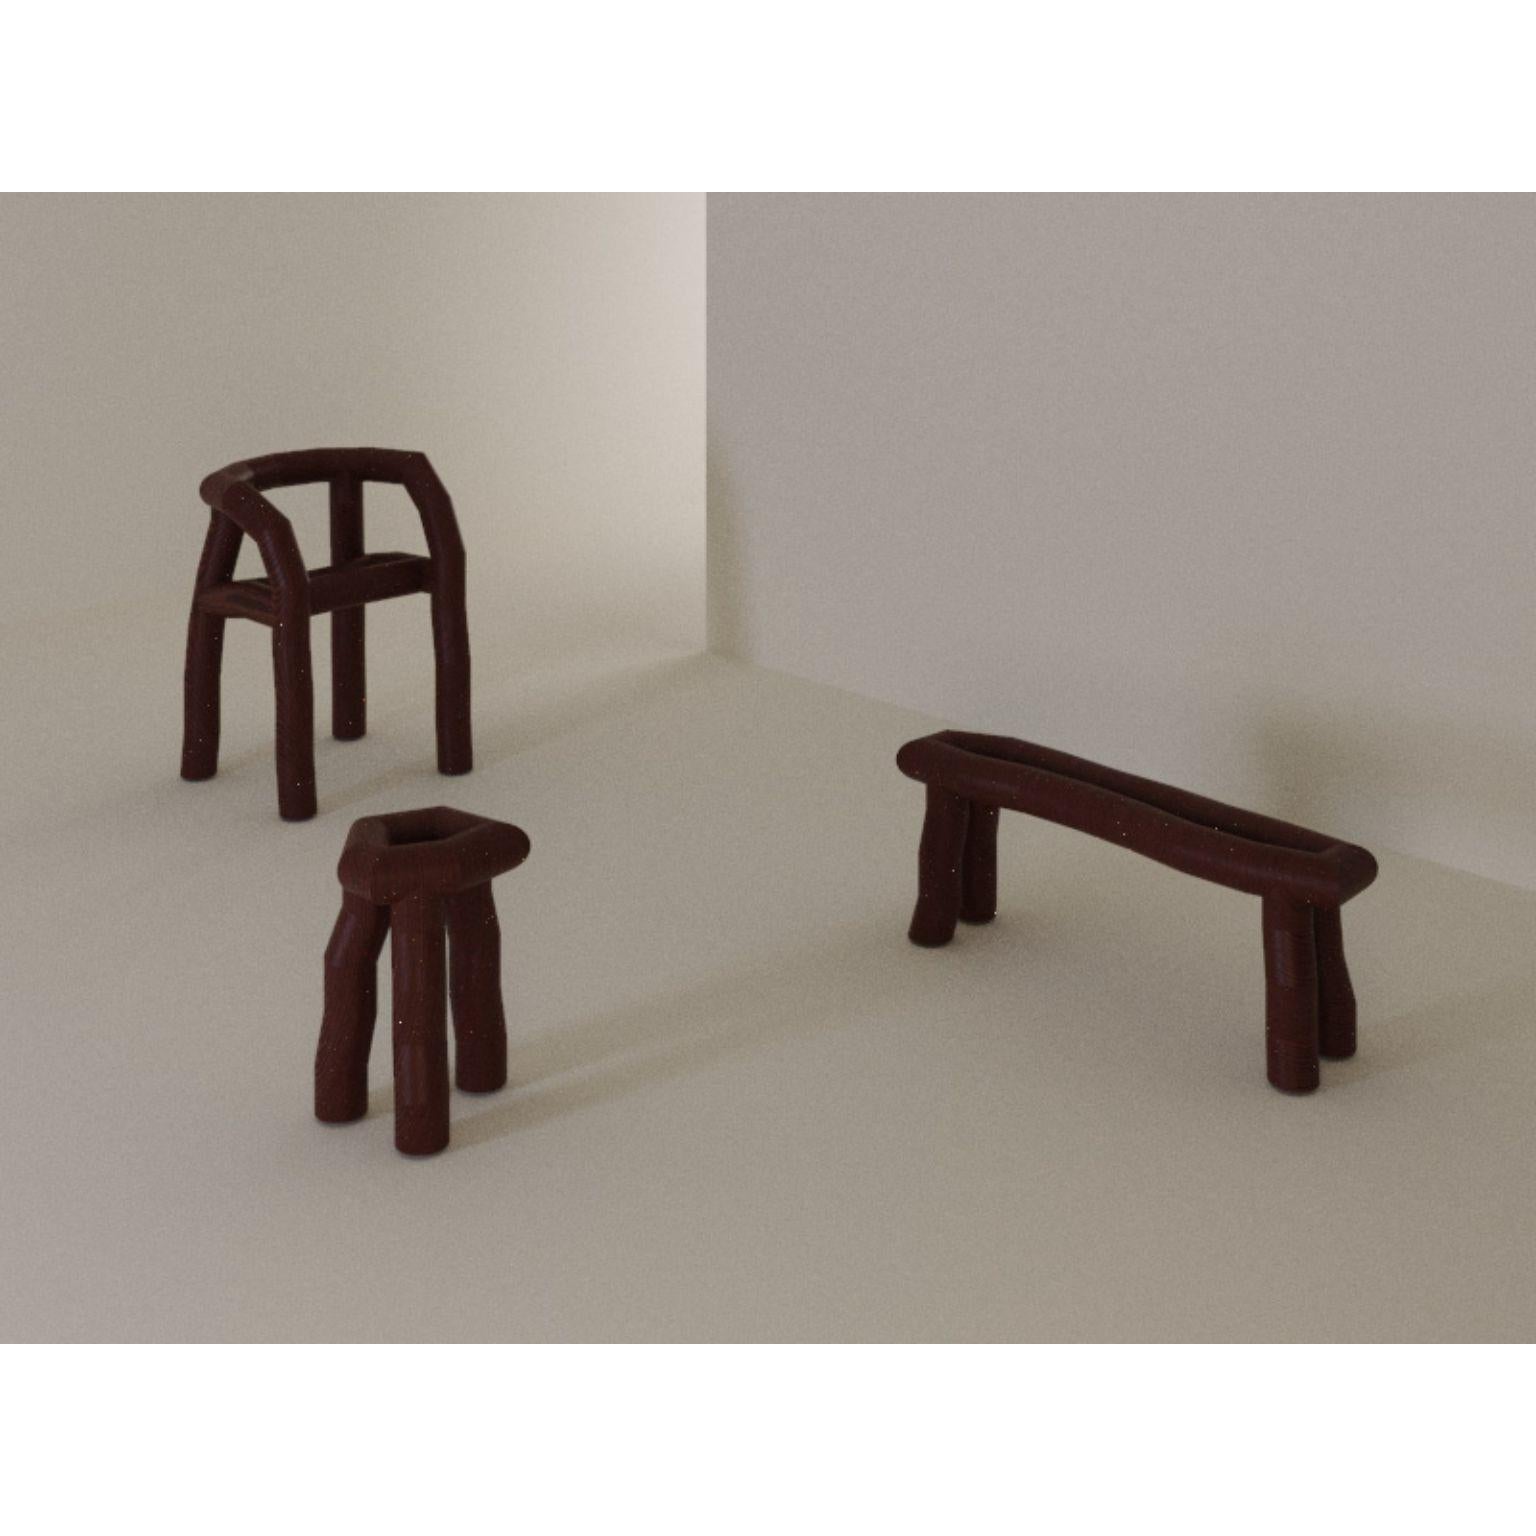 Segmento Pine Logs Chair by Cara Davide 2